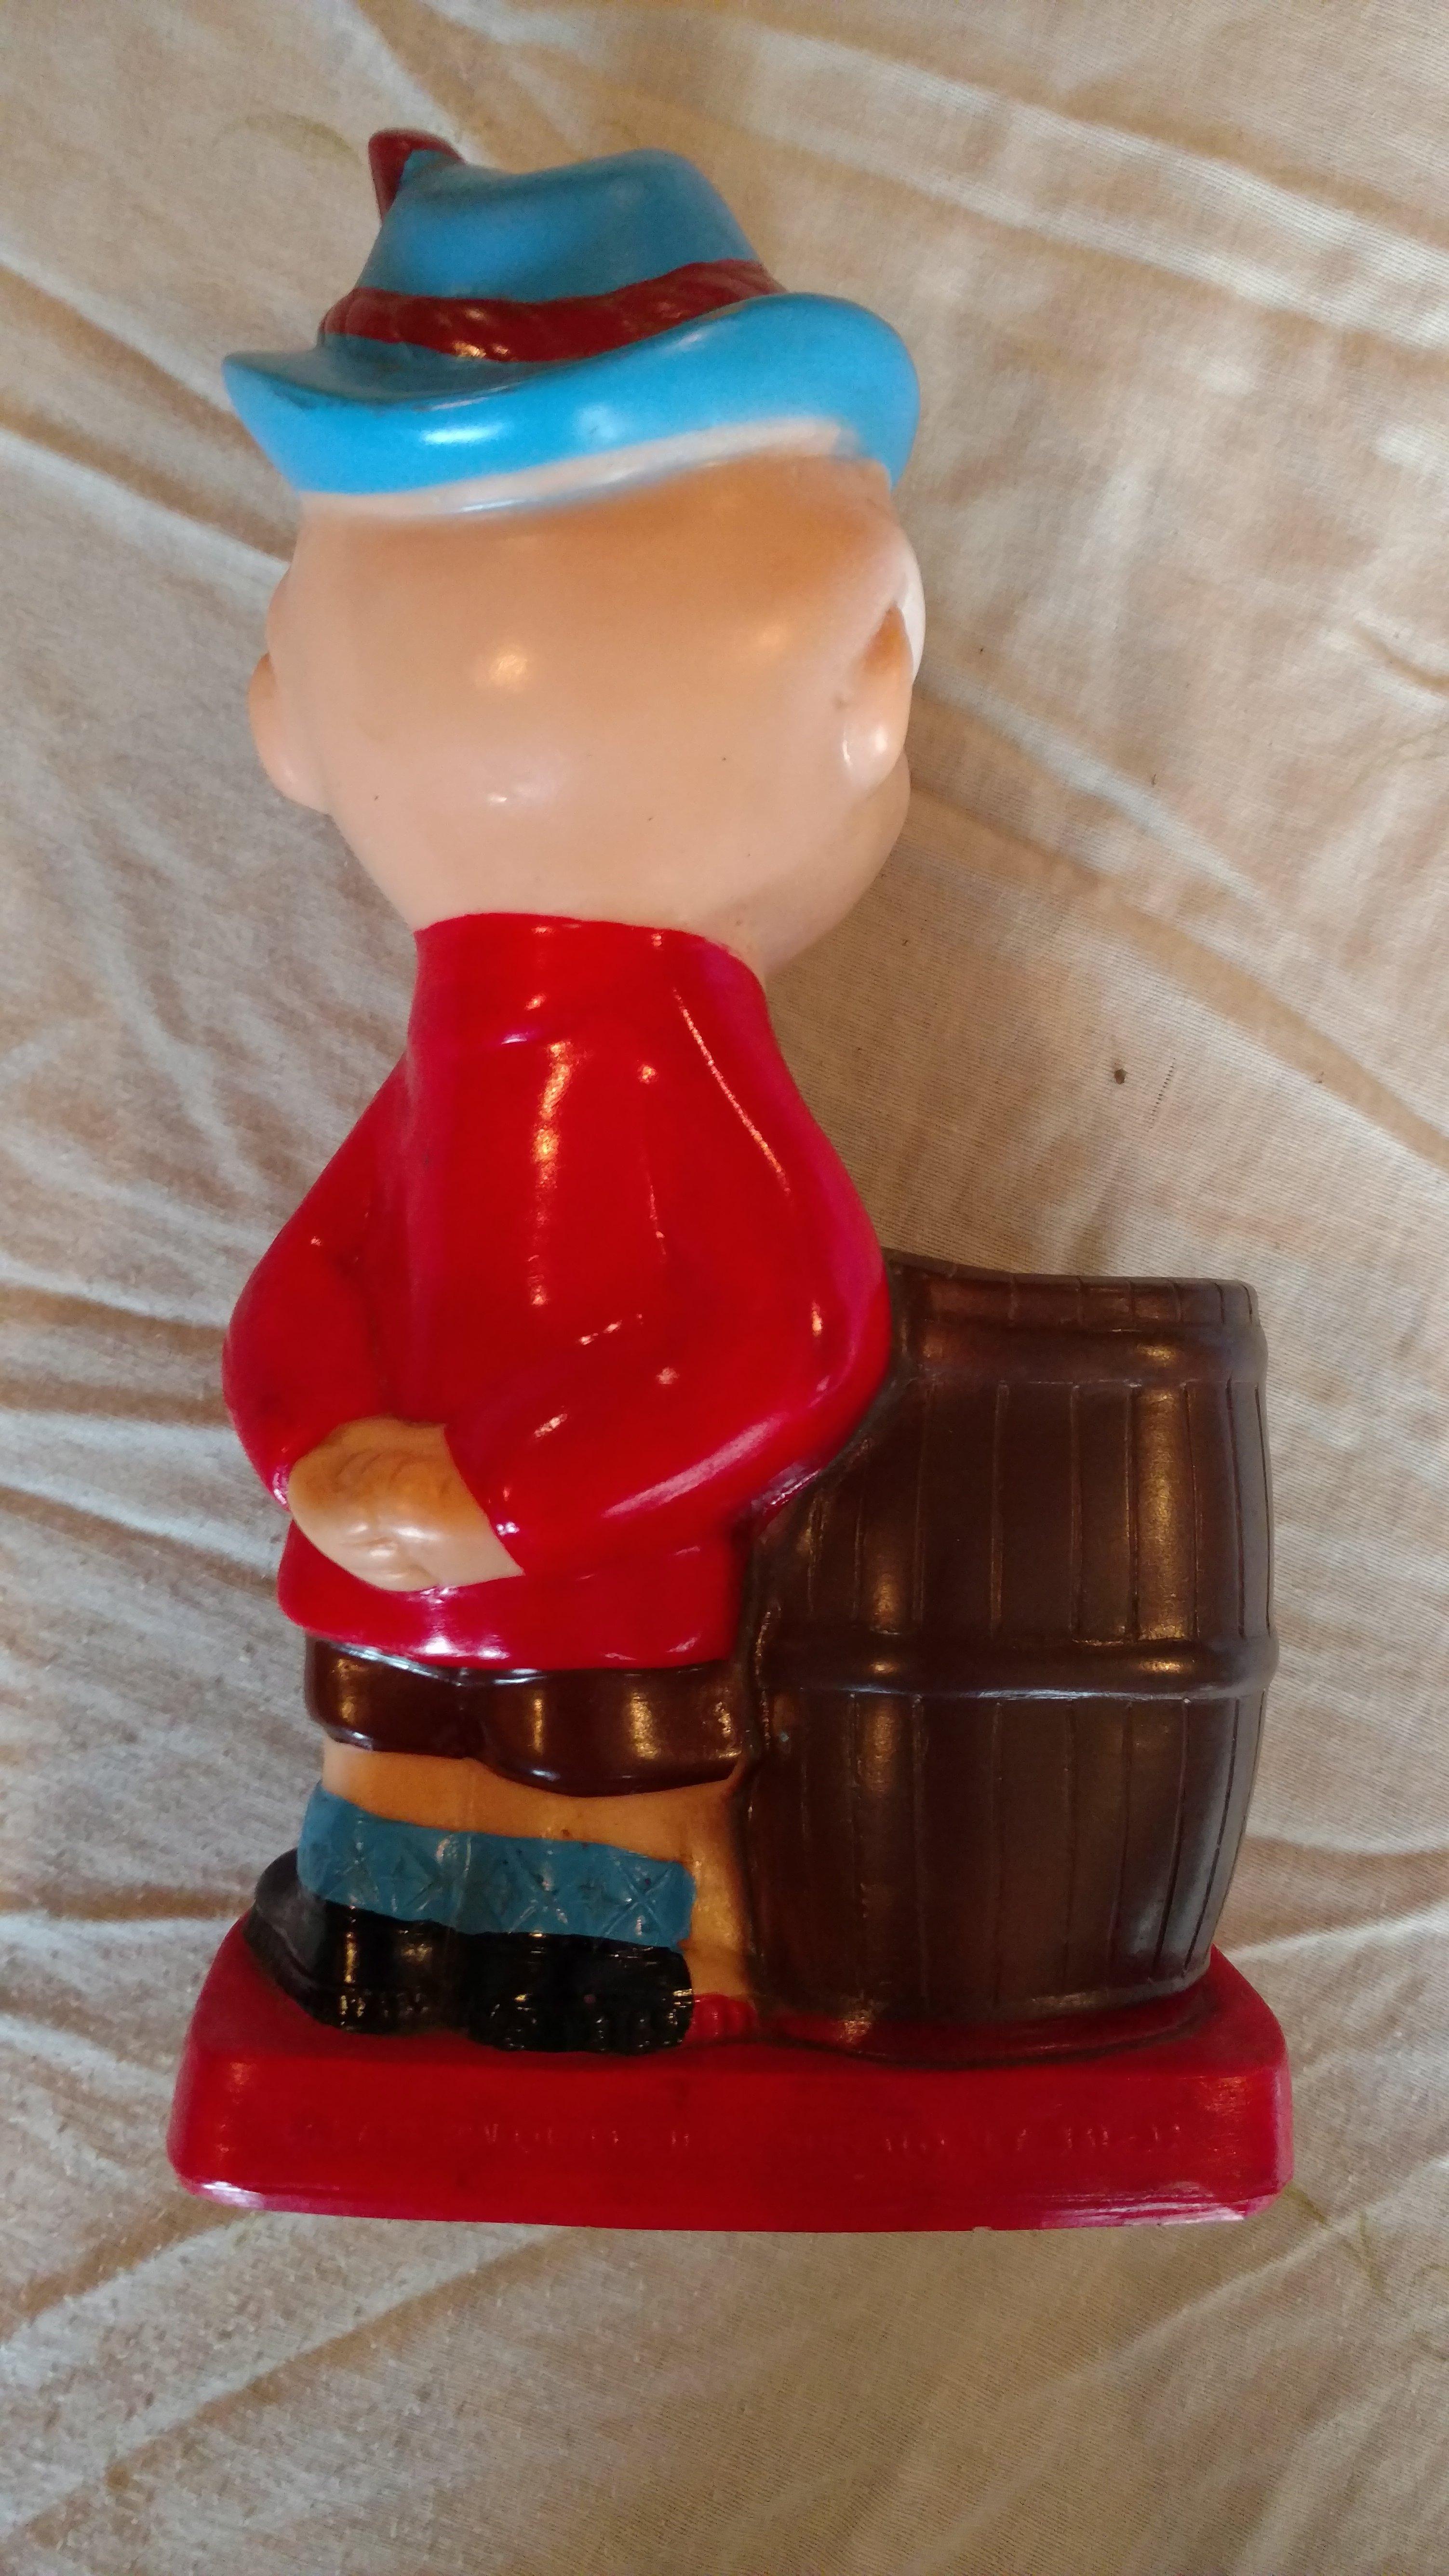 Labatt's Pilsner - Canadian honored brew figurine